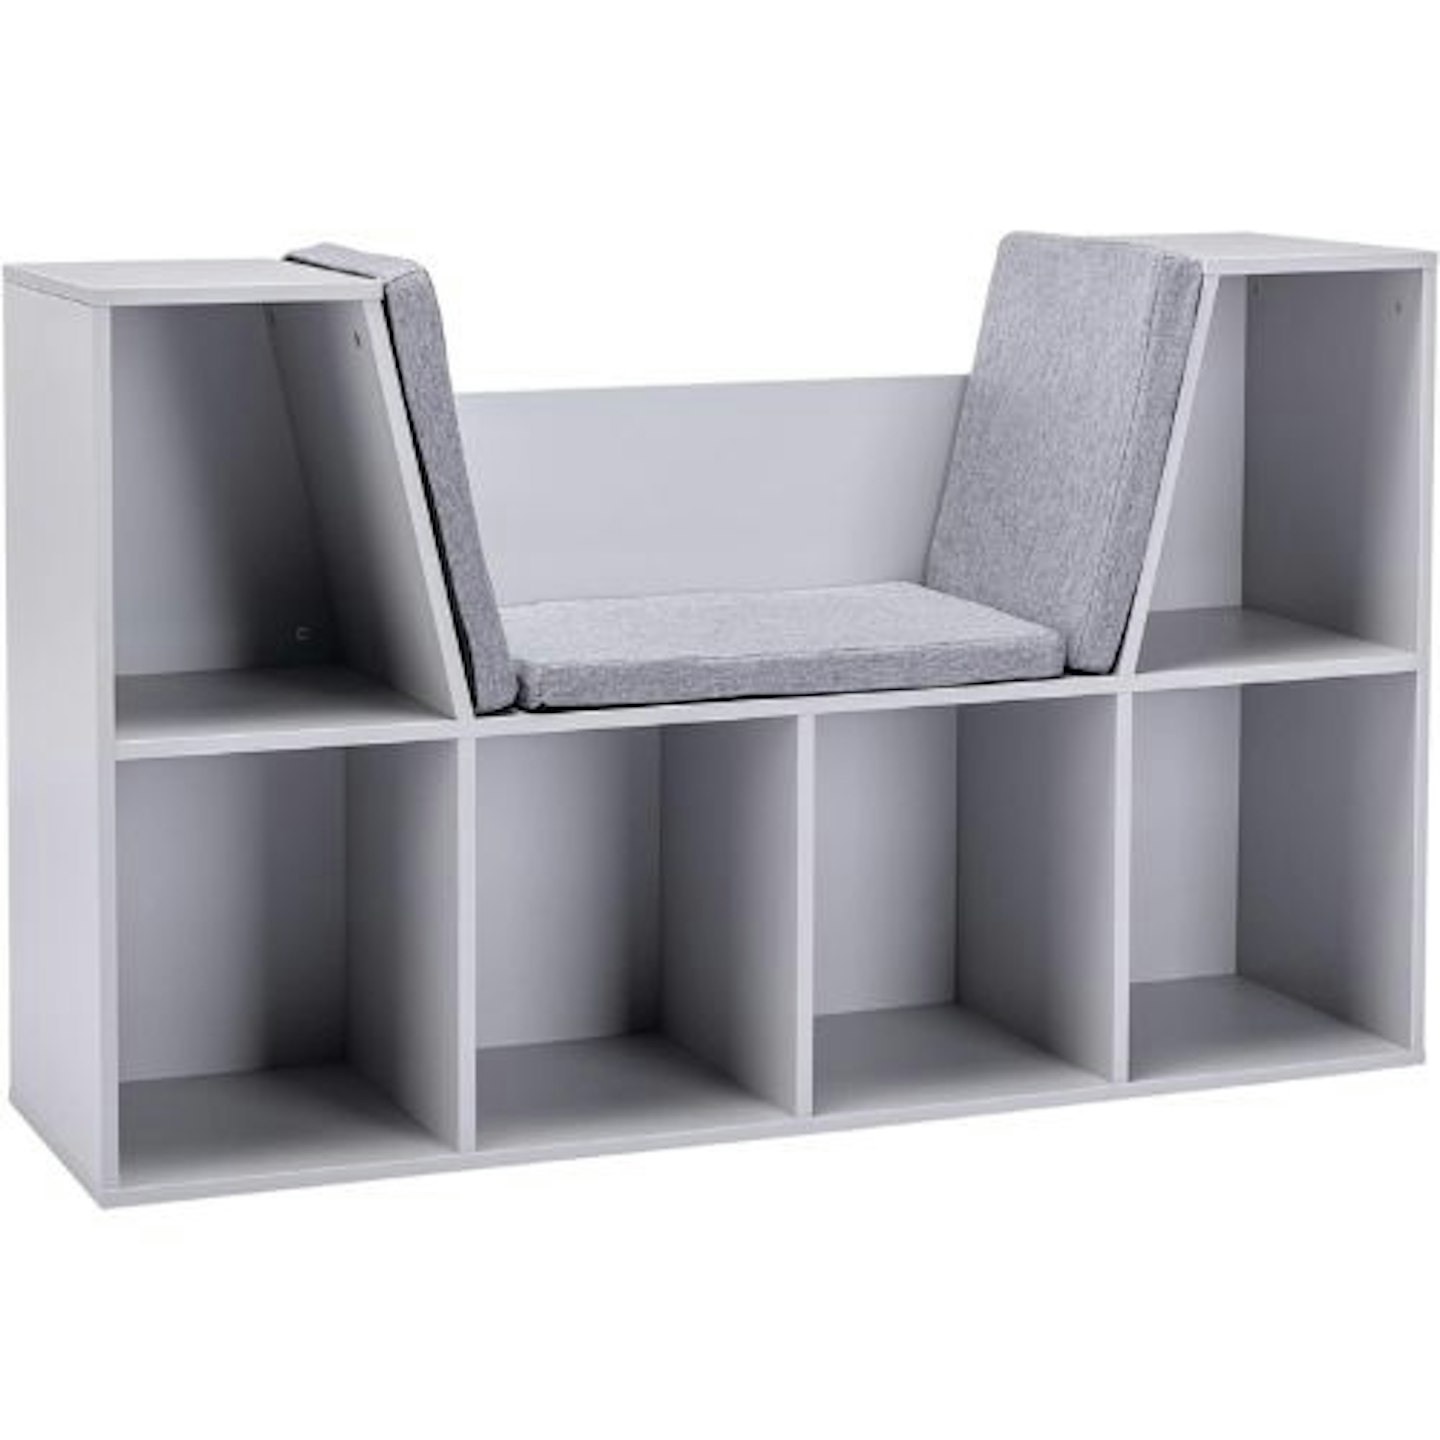 Best toy storage and organiser HOMCOM Kids Bookcase Shelf Storage Cabinet Unit